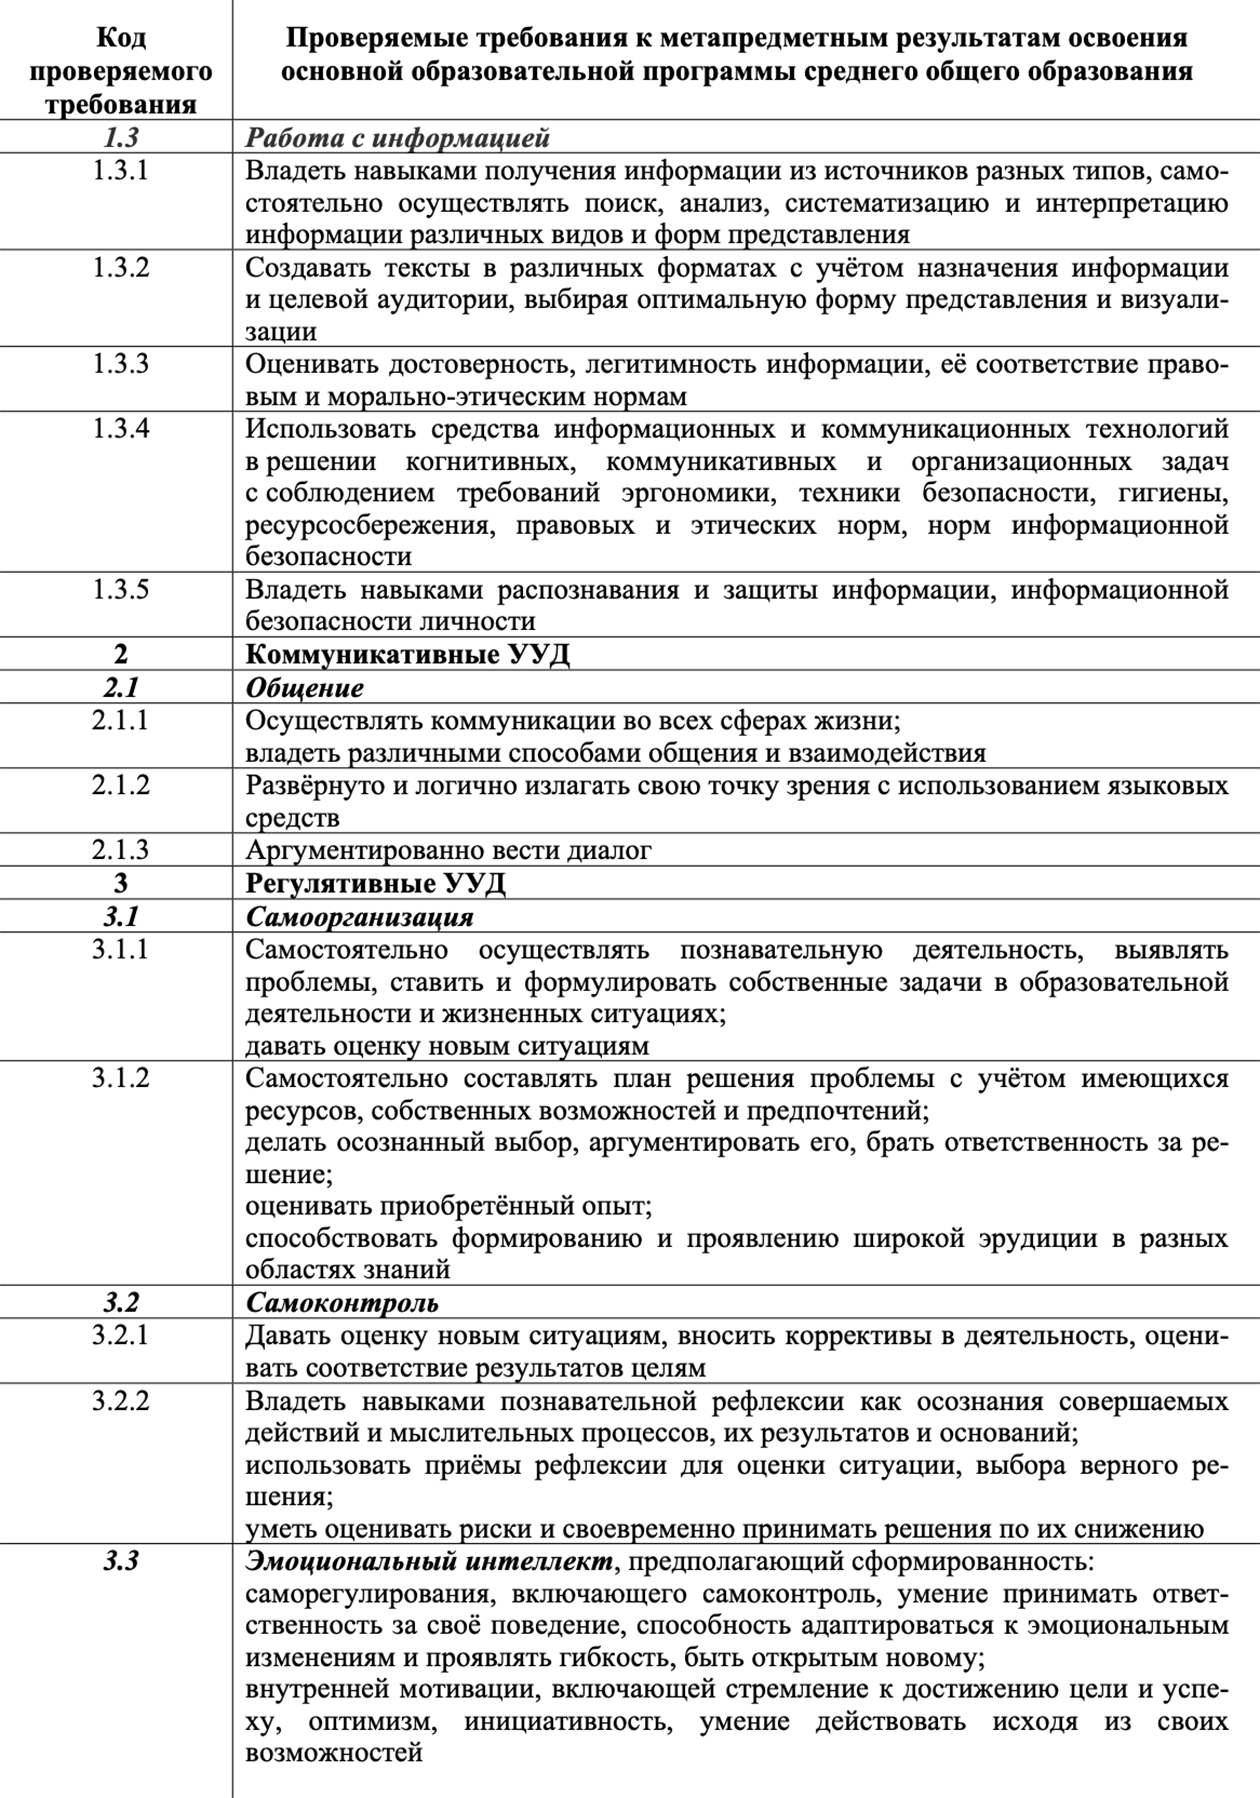 Перечень навыков для сдачи ЕГЭ по информатике. Источник: fipi.ru